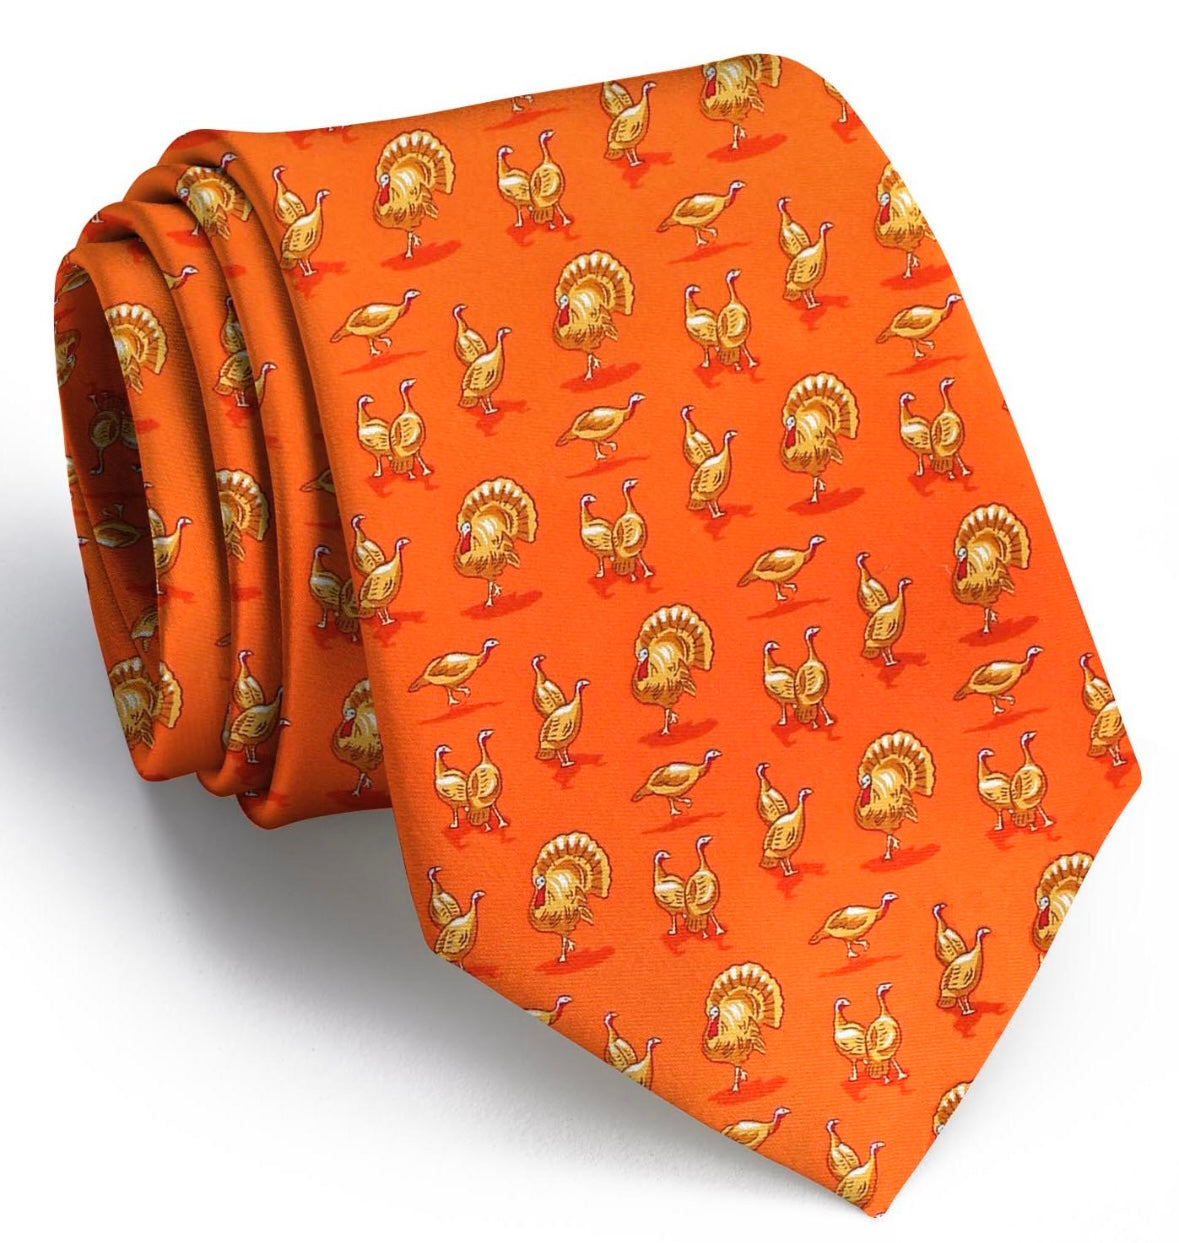 Turkey Trot Orange Woven Print Necktie